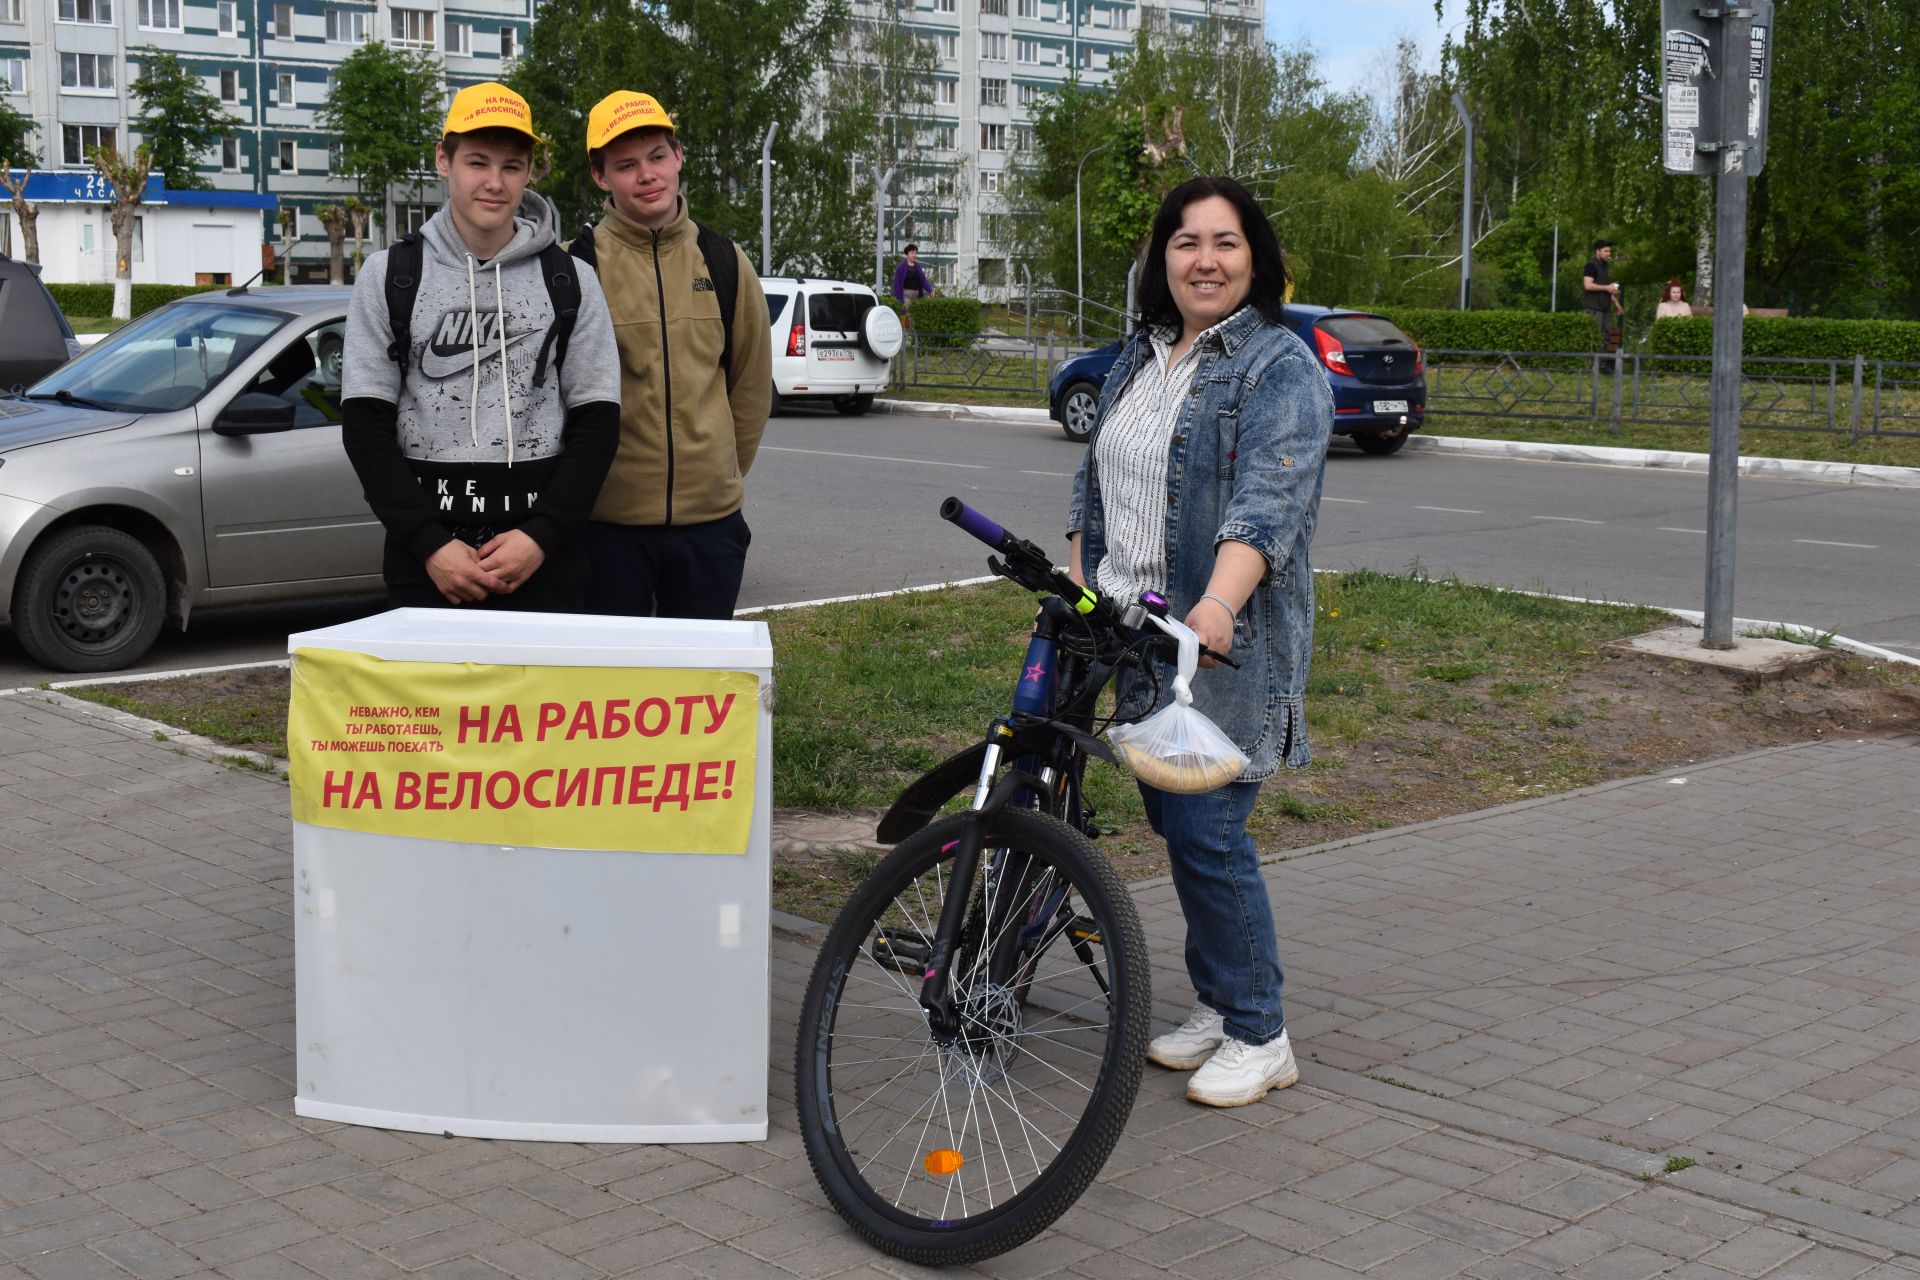 Камполянцы присоединились к акции «На работу, на велосипеде»